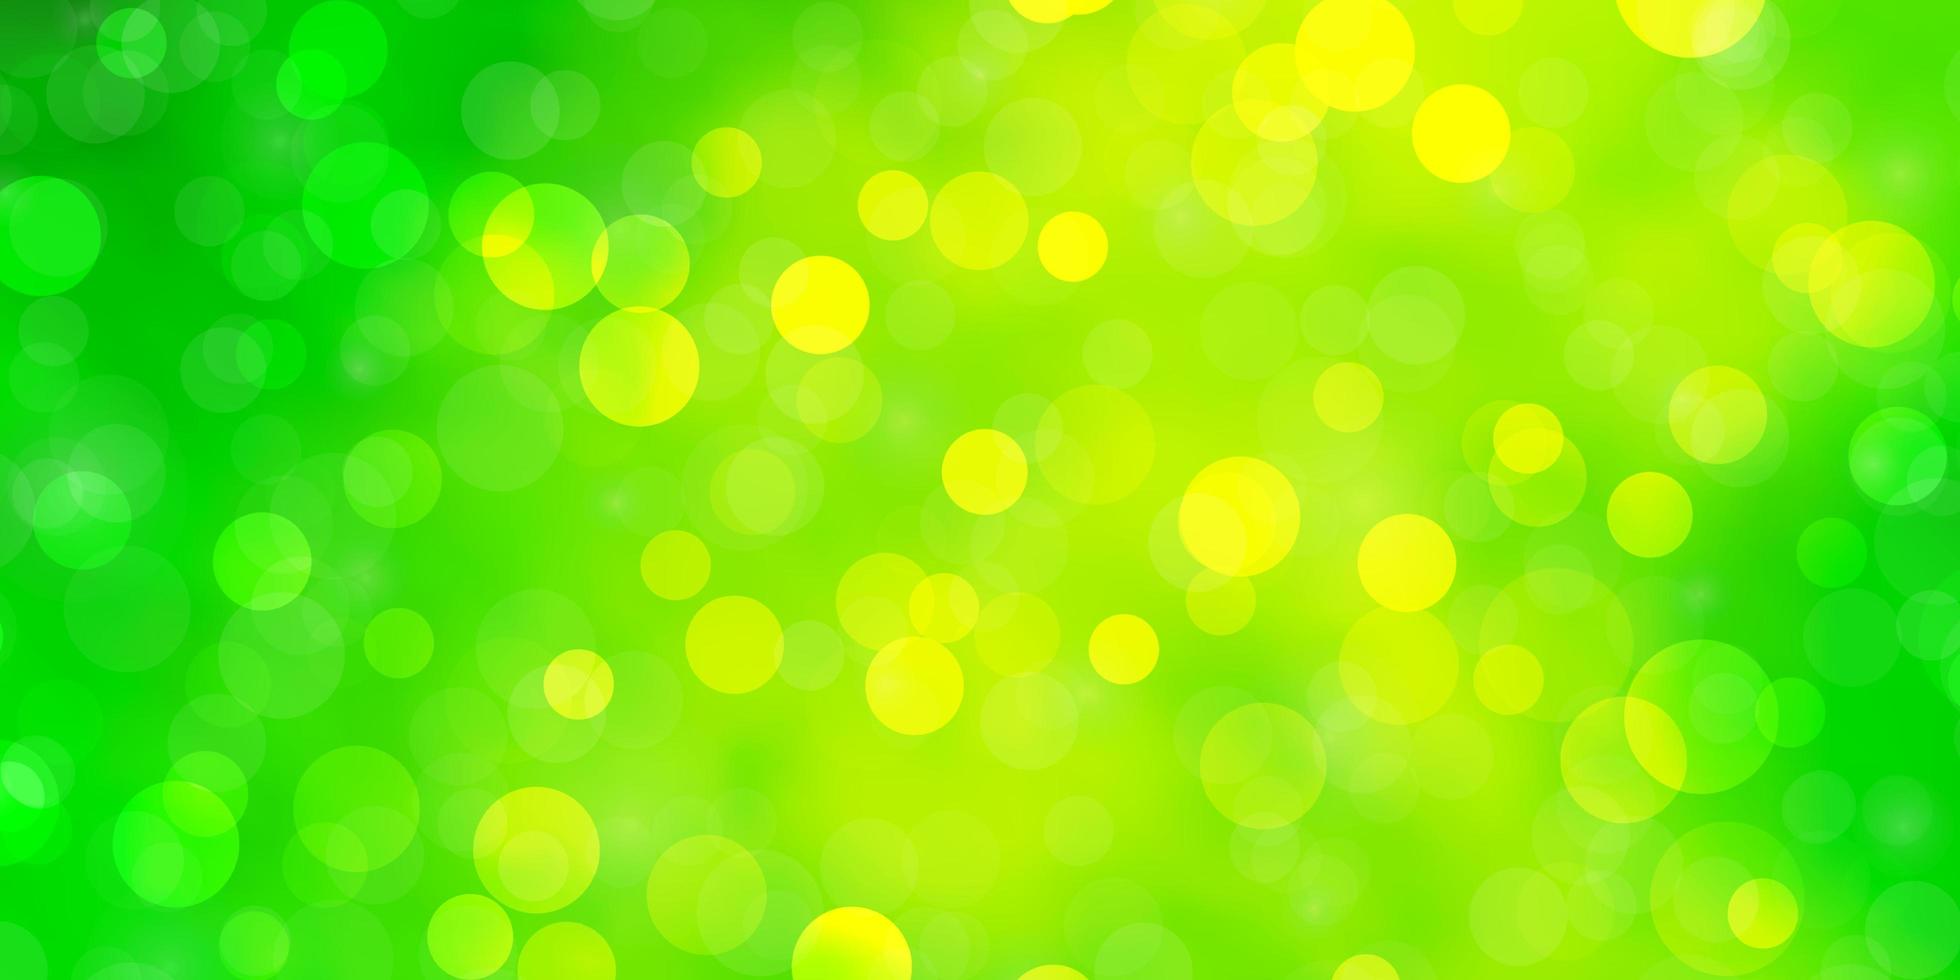 patrón de vector verde claro, amarillo con círculos.